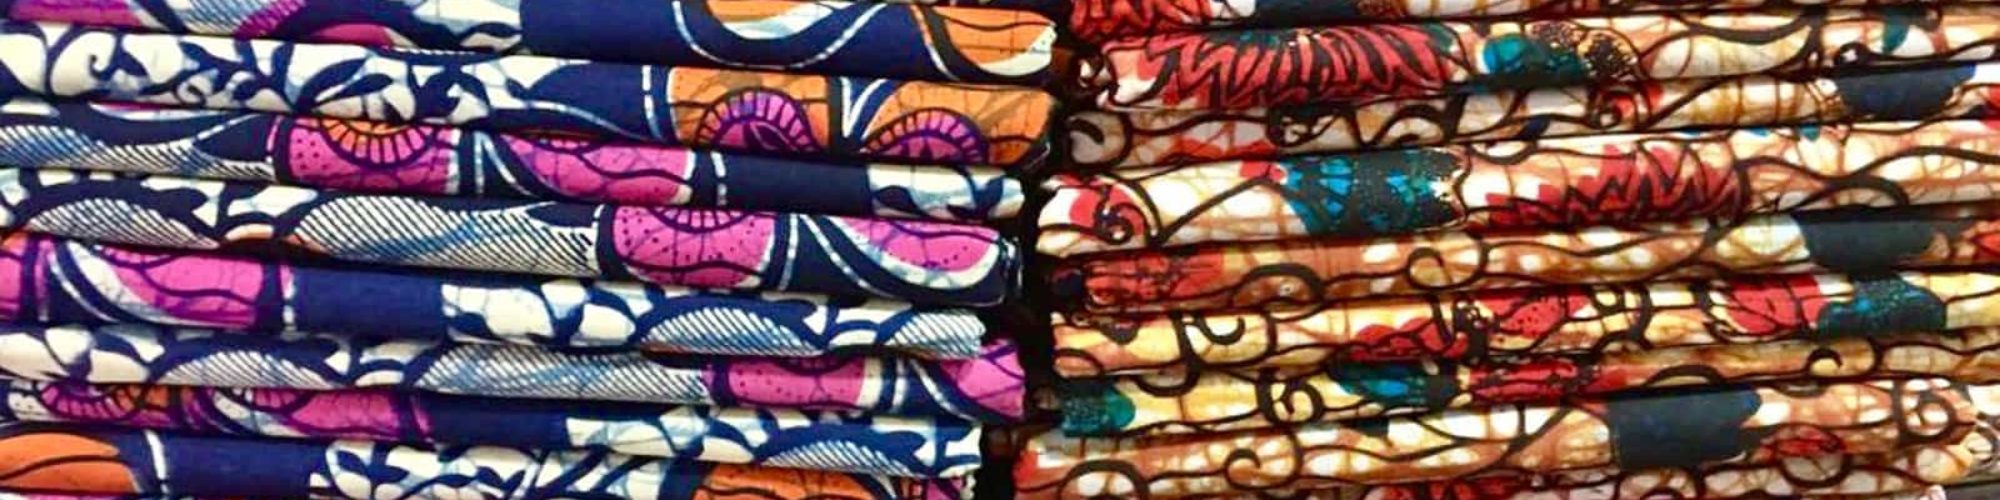 Pile of African wax print fabrics shop in Tanzania